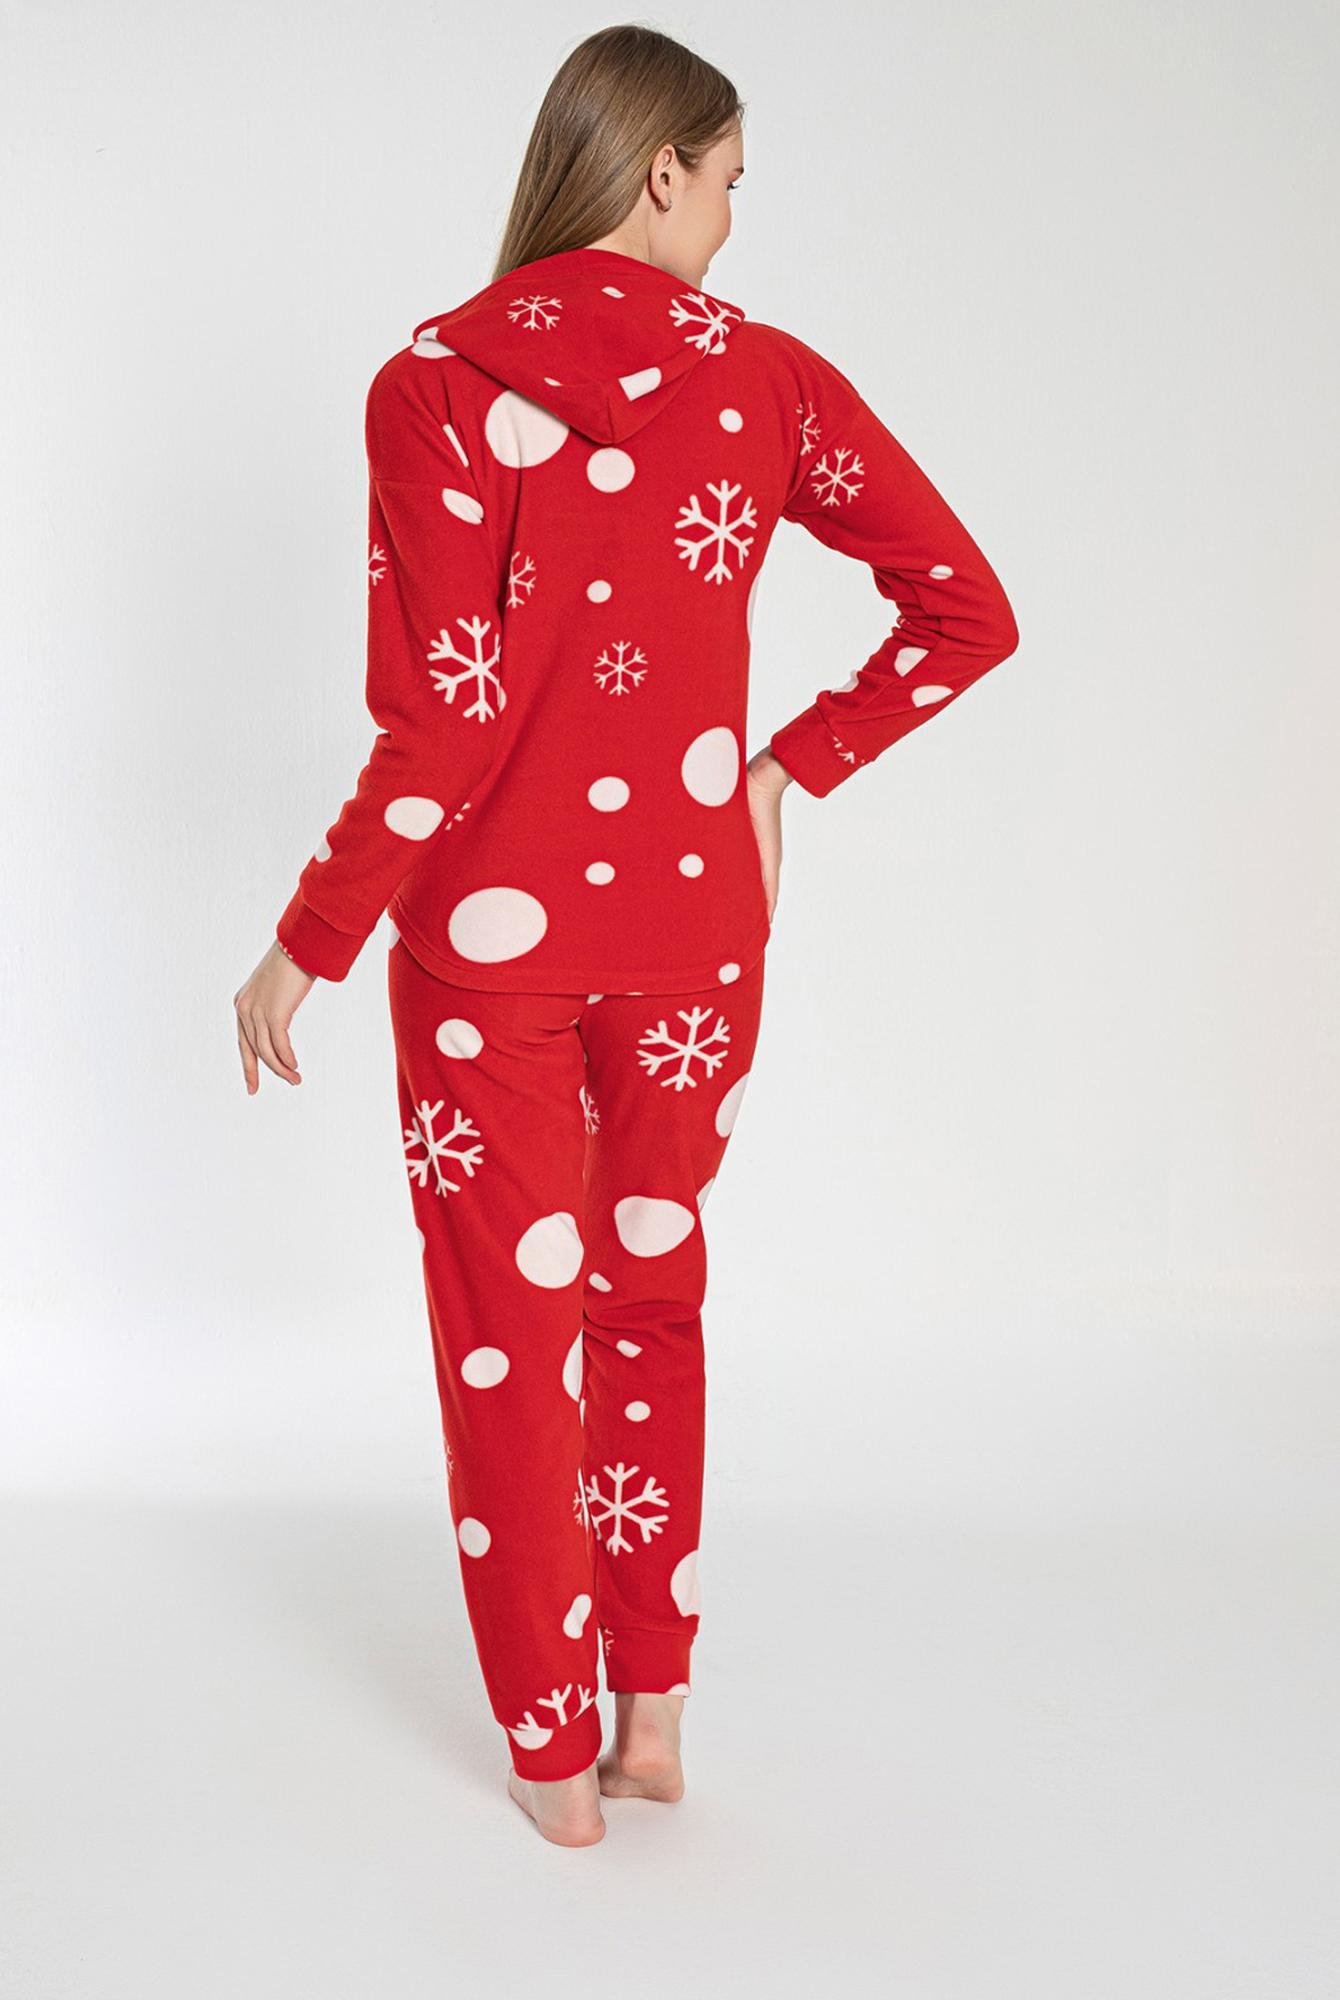  Ecrou Kadın Kırmızı DONUT Yılbaşı Kanguru Cep Pijama Sweat Takım